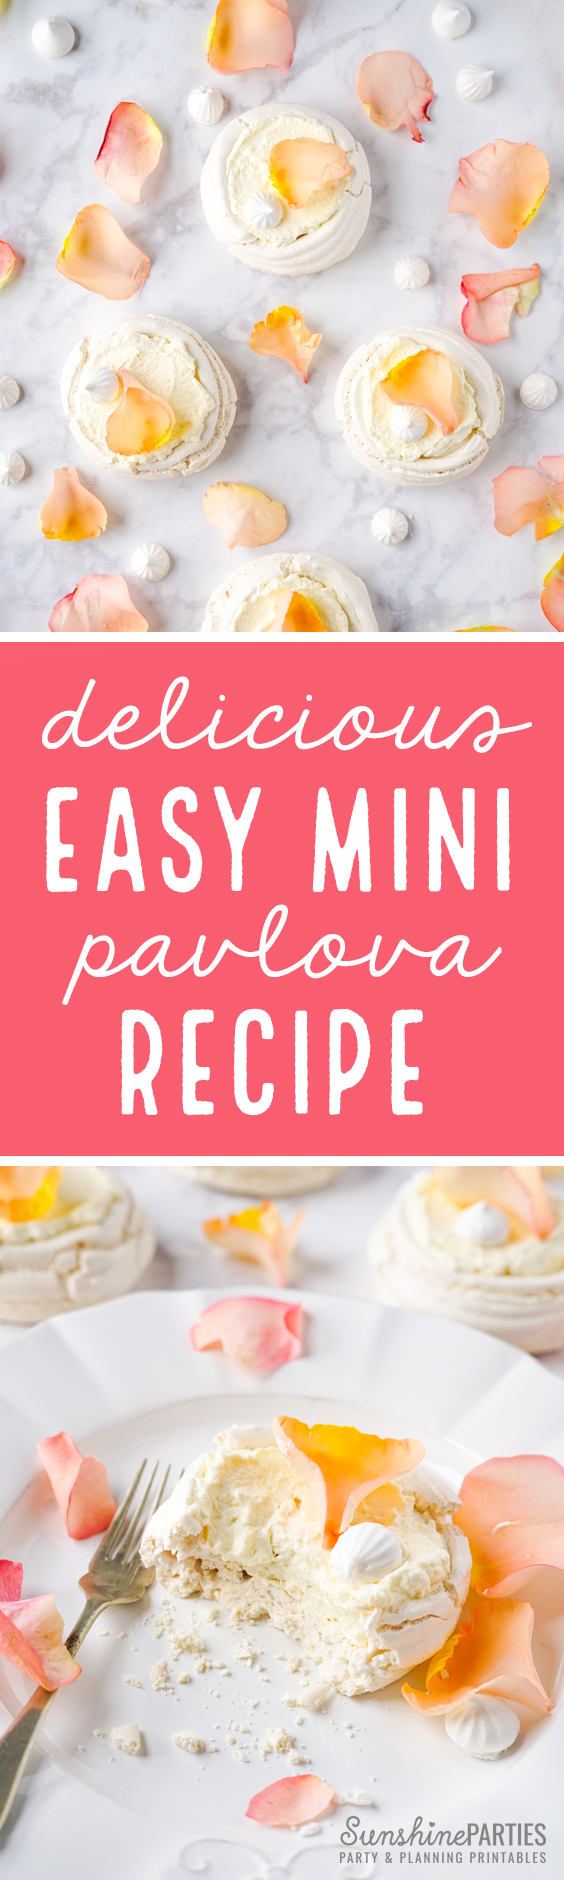 Mini Pavlova Recipe - easy and Delicious